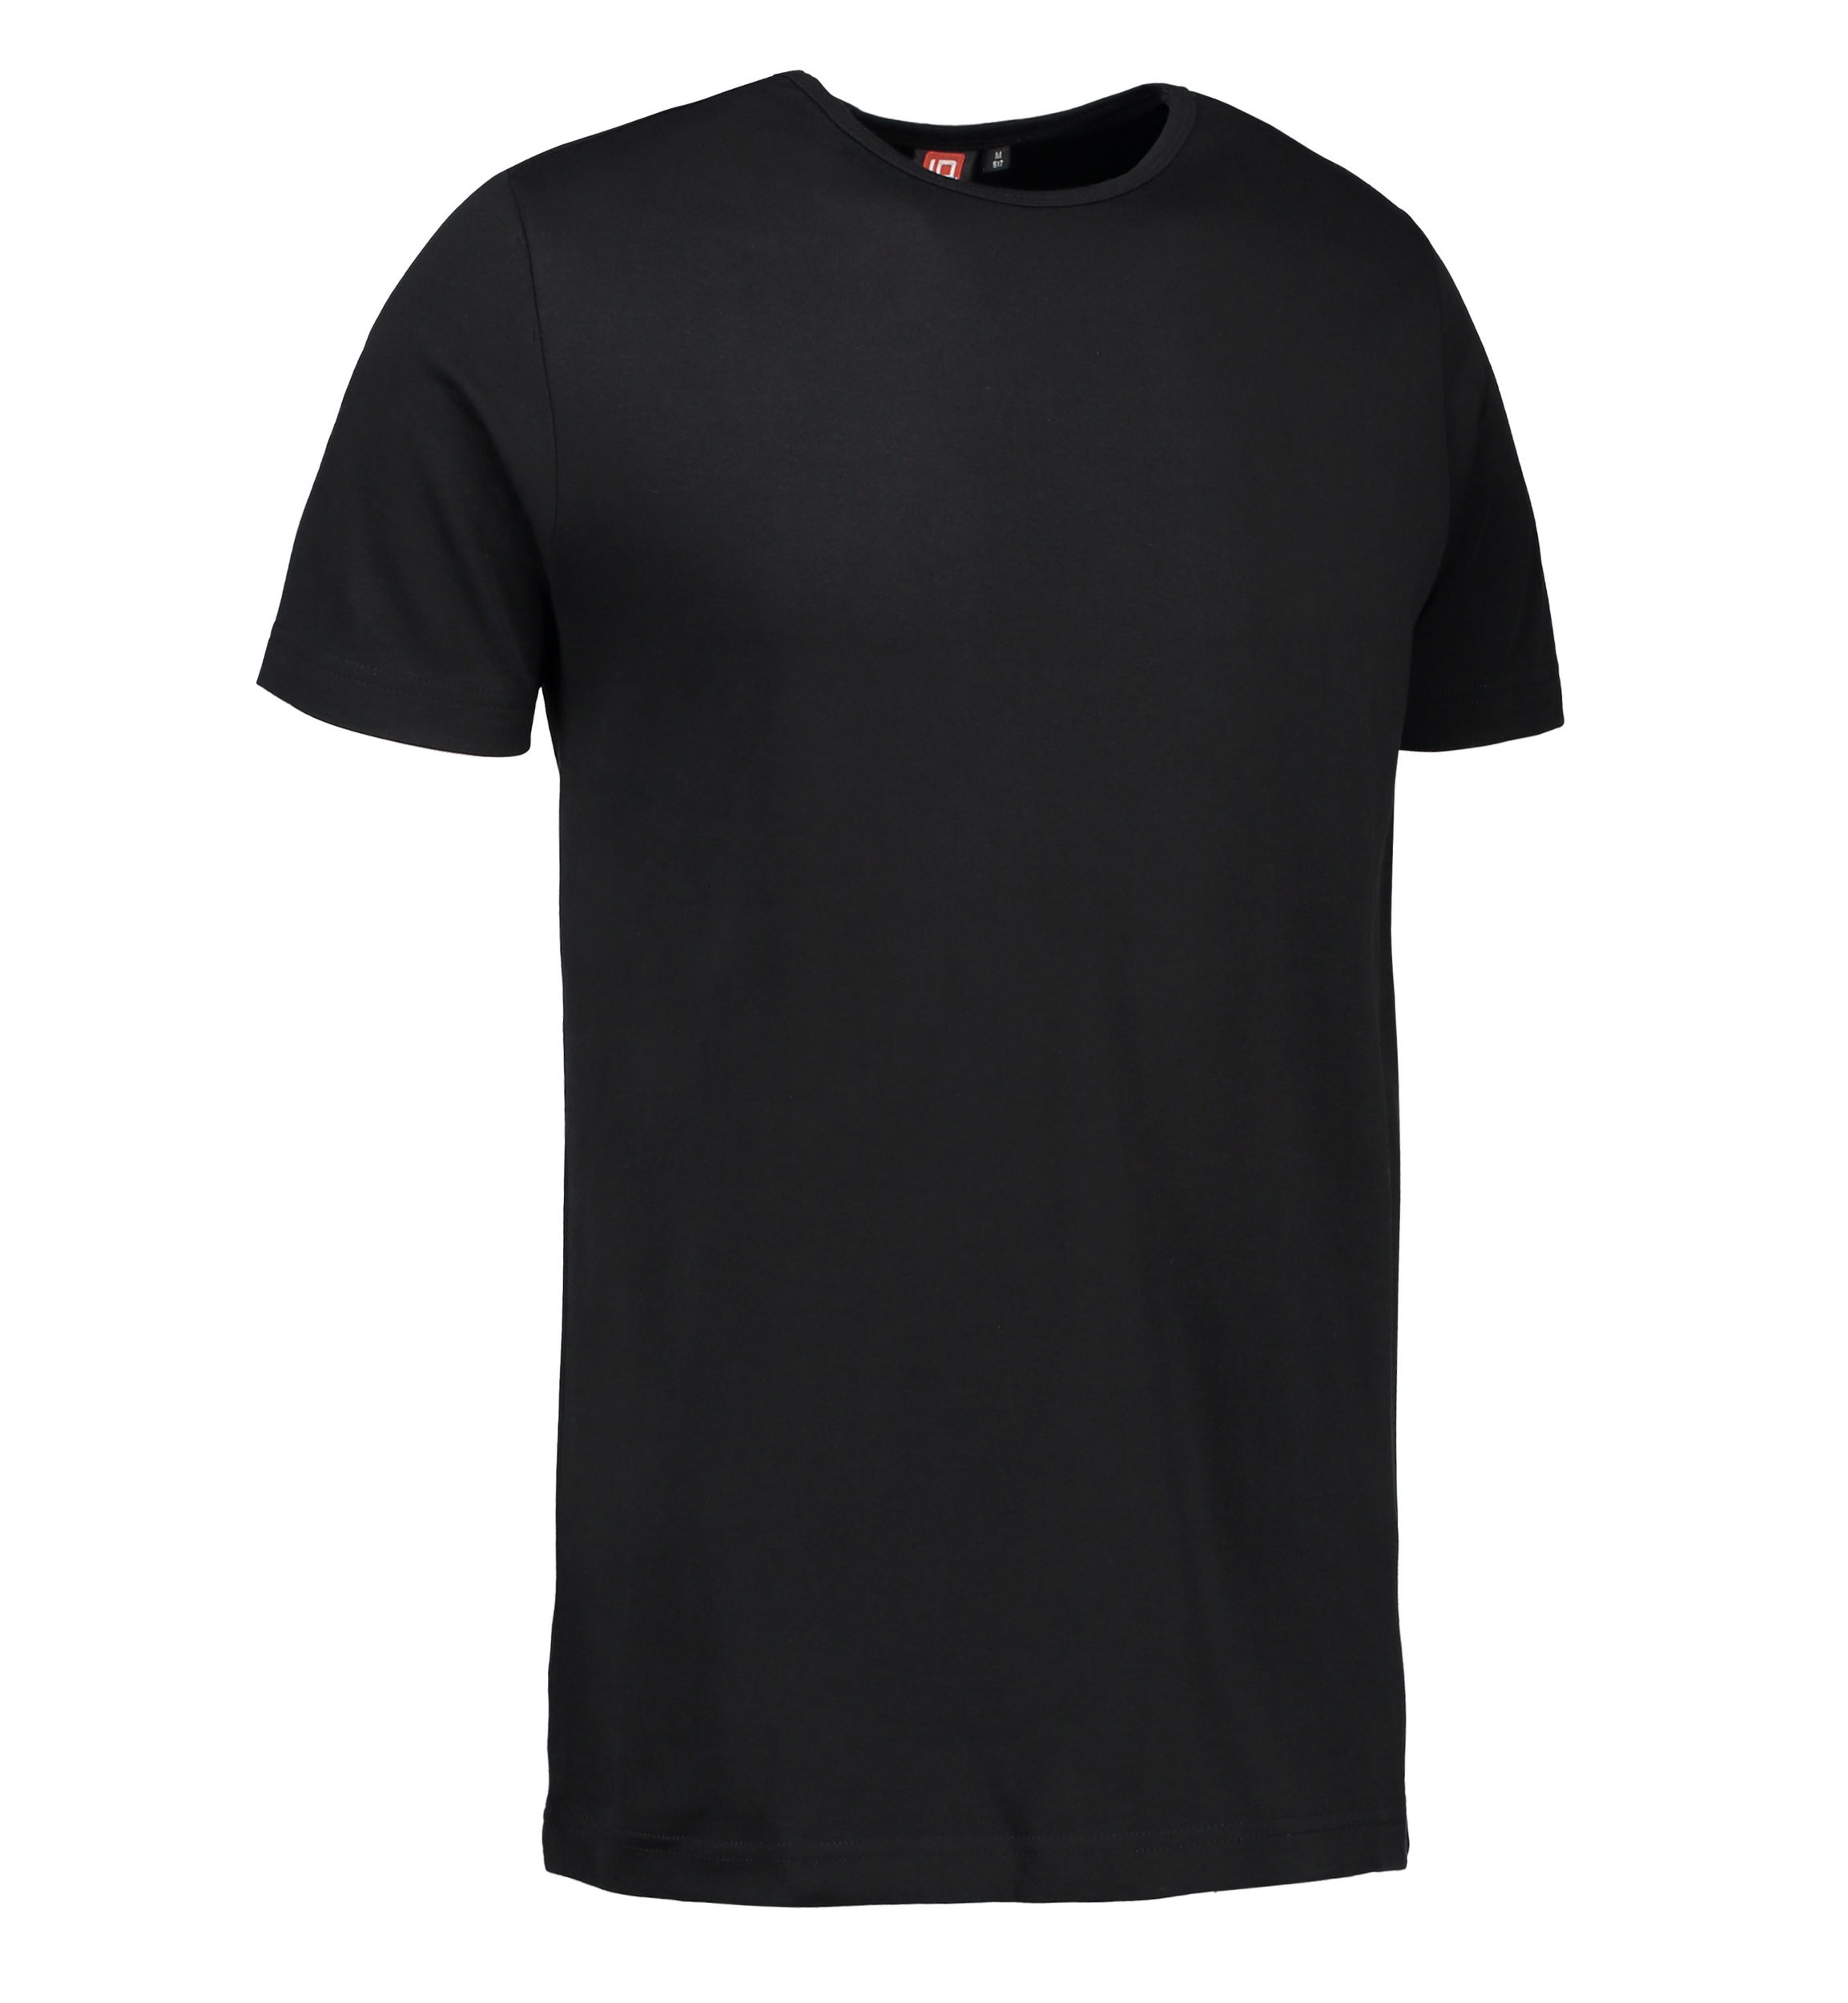 Billede af Sort t-shirt med rund hals til mænd - M hos Sygeplejebutikken.dk